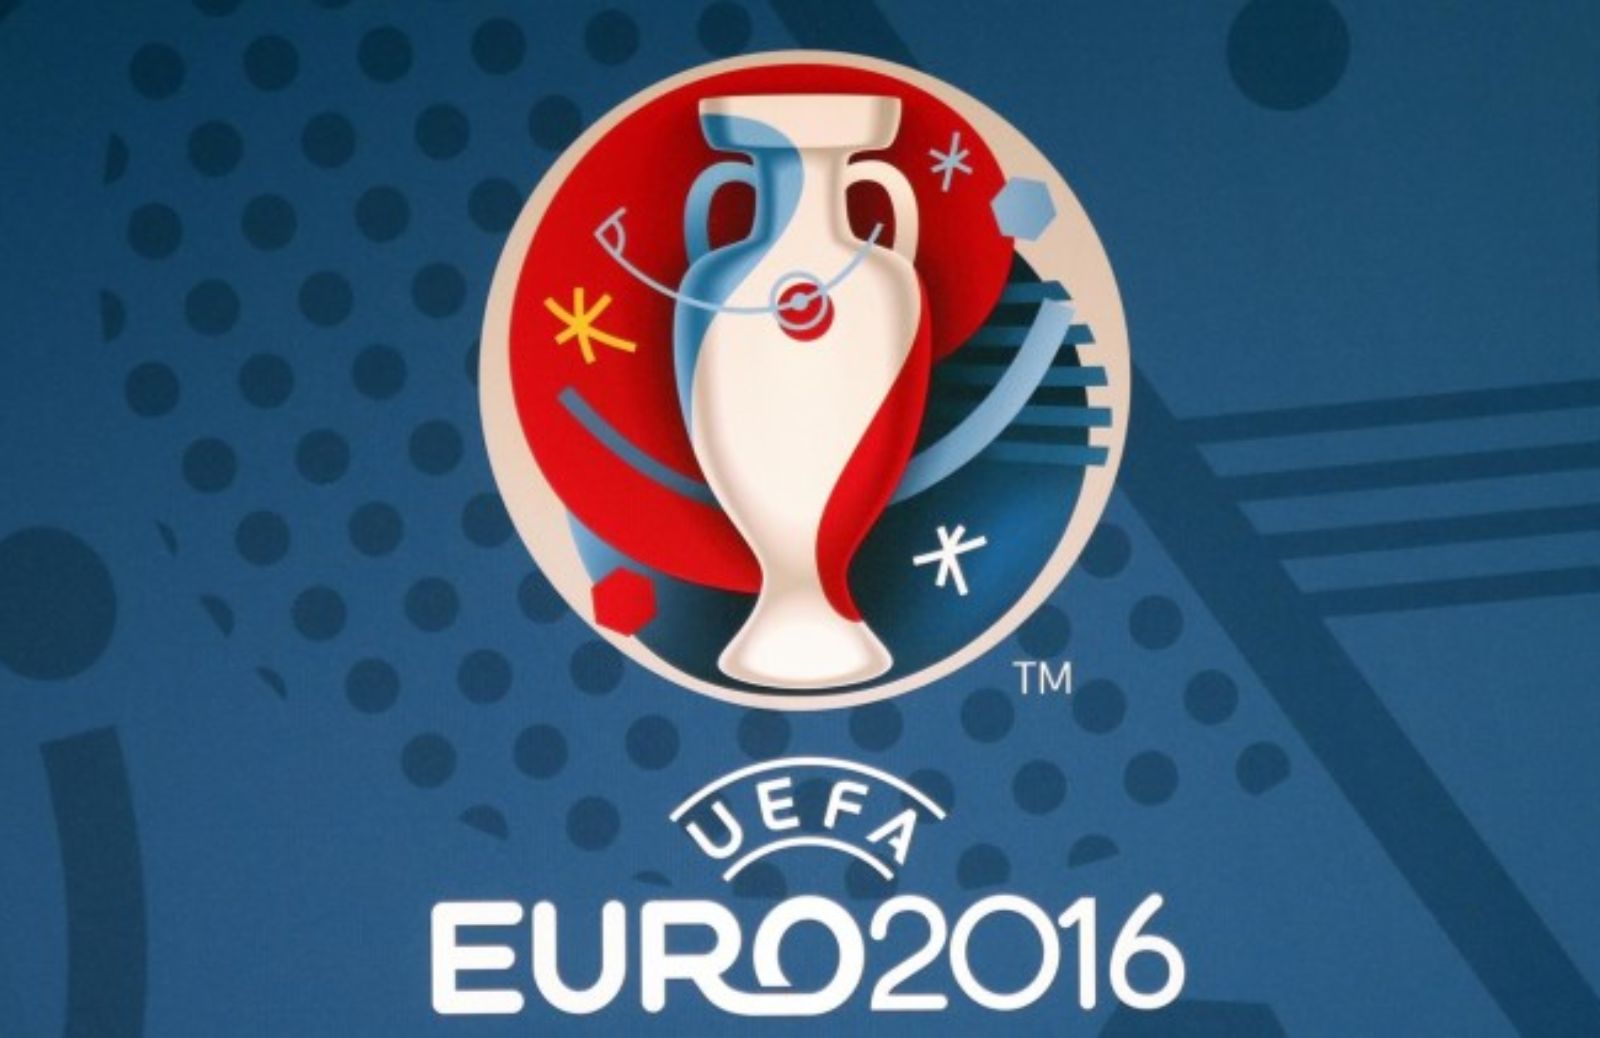 Al via i Campionati Europei di calcio 2016 